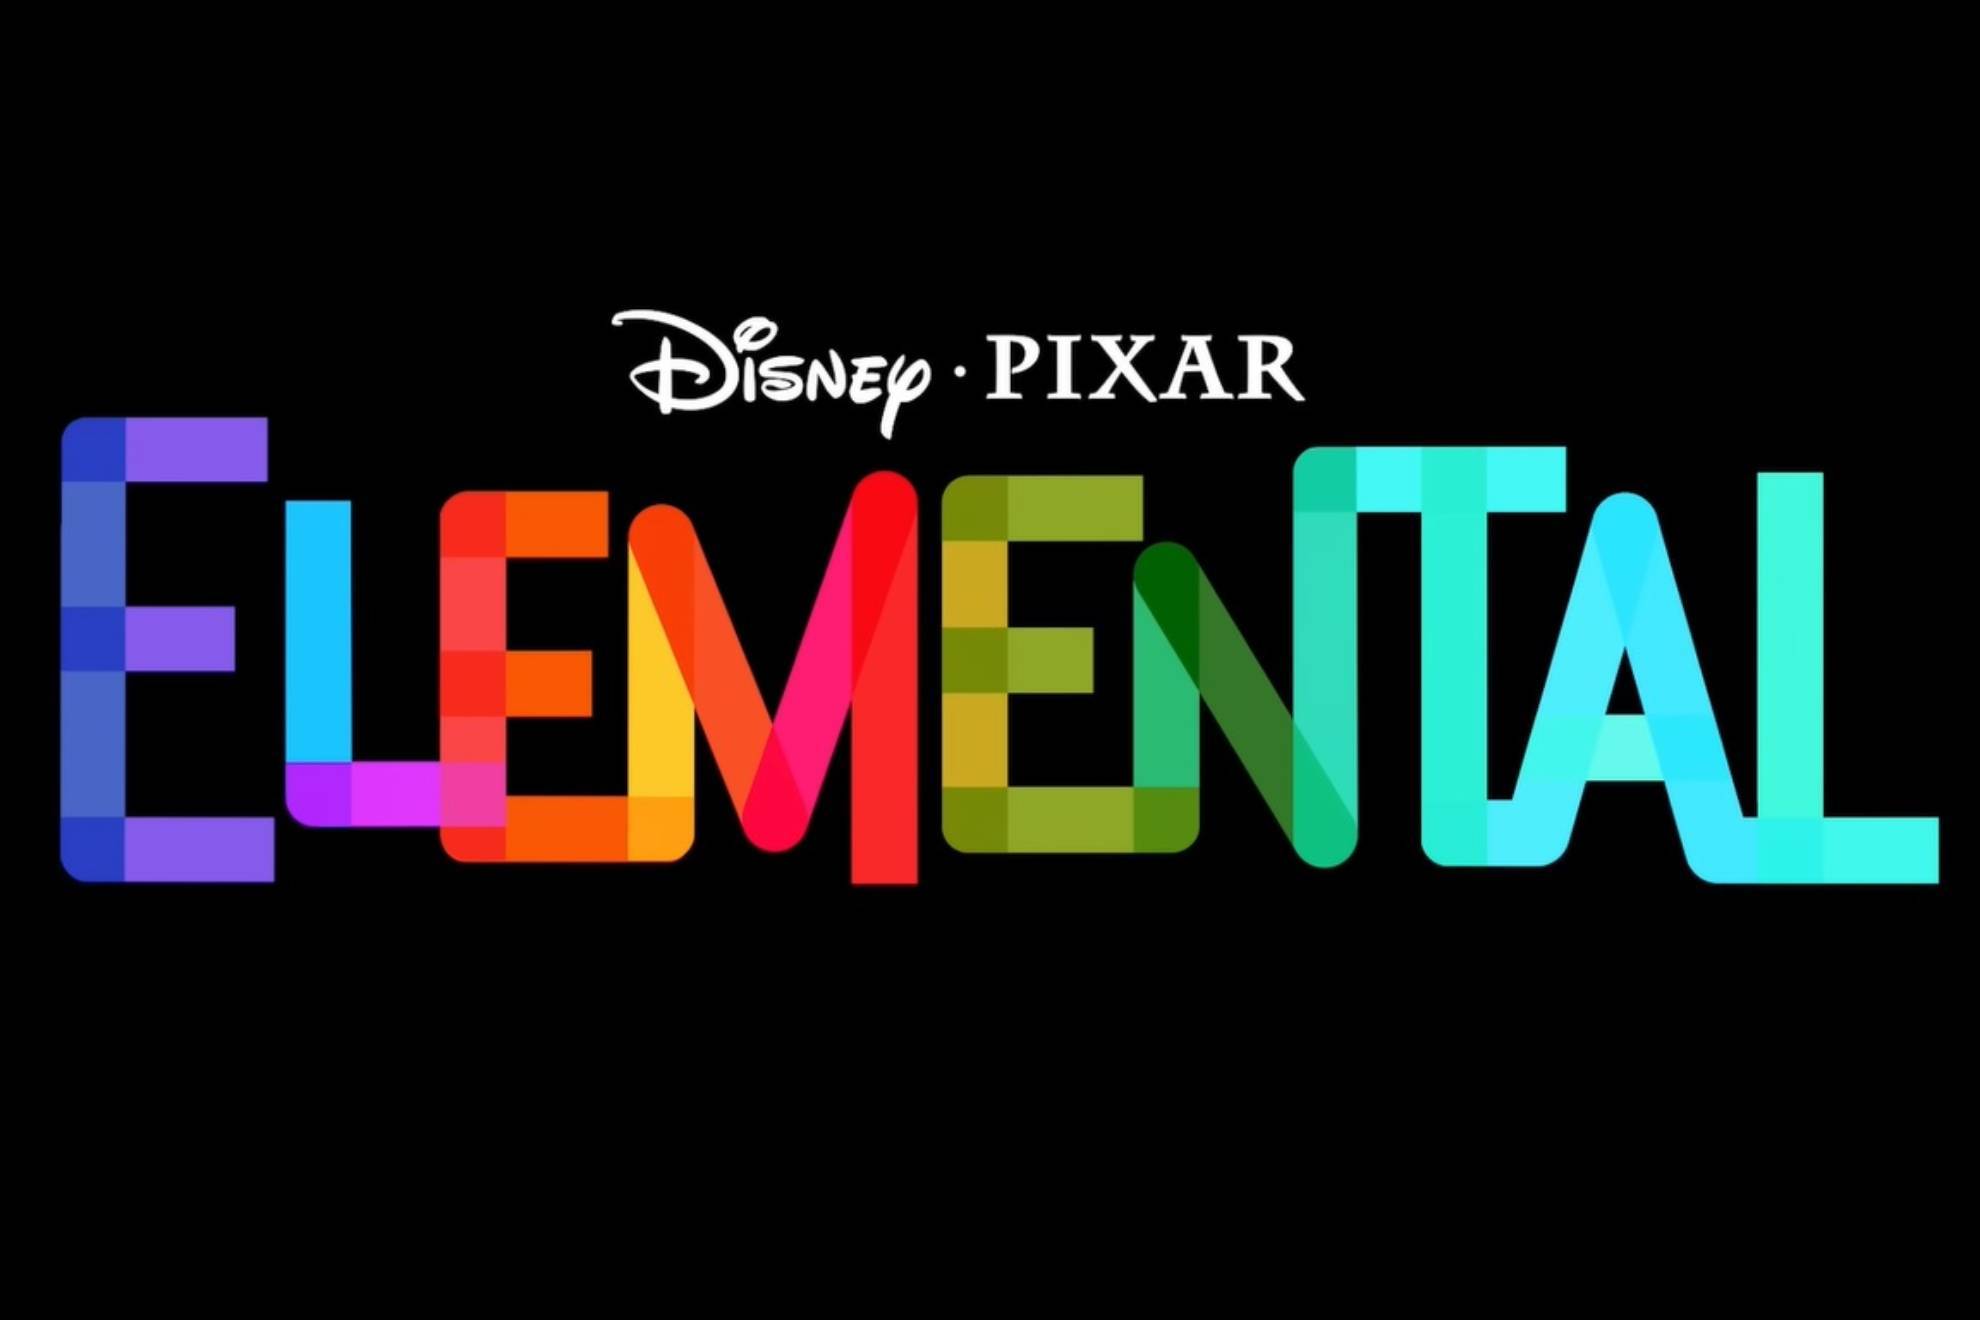 Elemental no tuvo el estreno deseado en Estados Unidos.